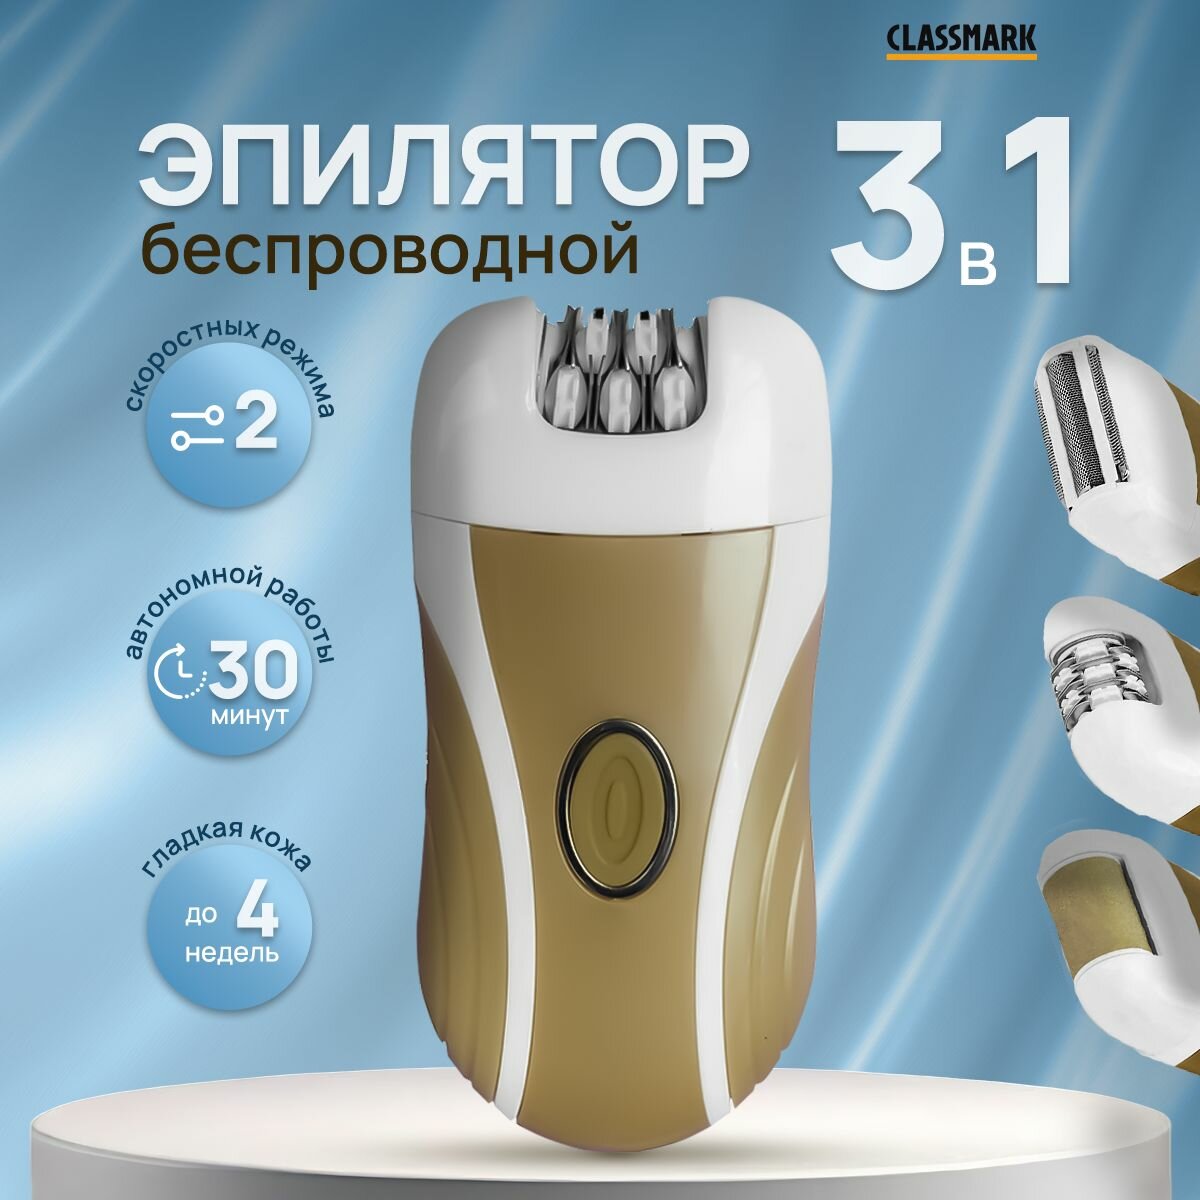 Эпилятор женский электрический Classmark с 3 насадками беспроводной на аккумуляторе для удаления волос с тела, зоны бикини и пяток